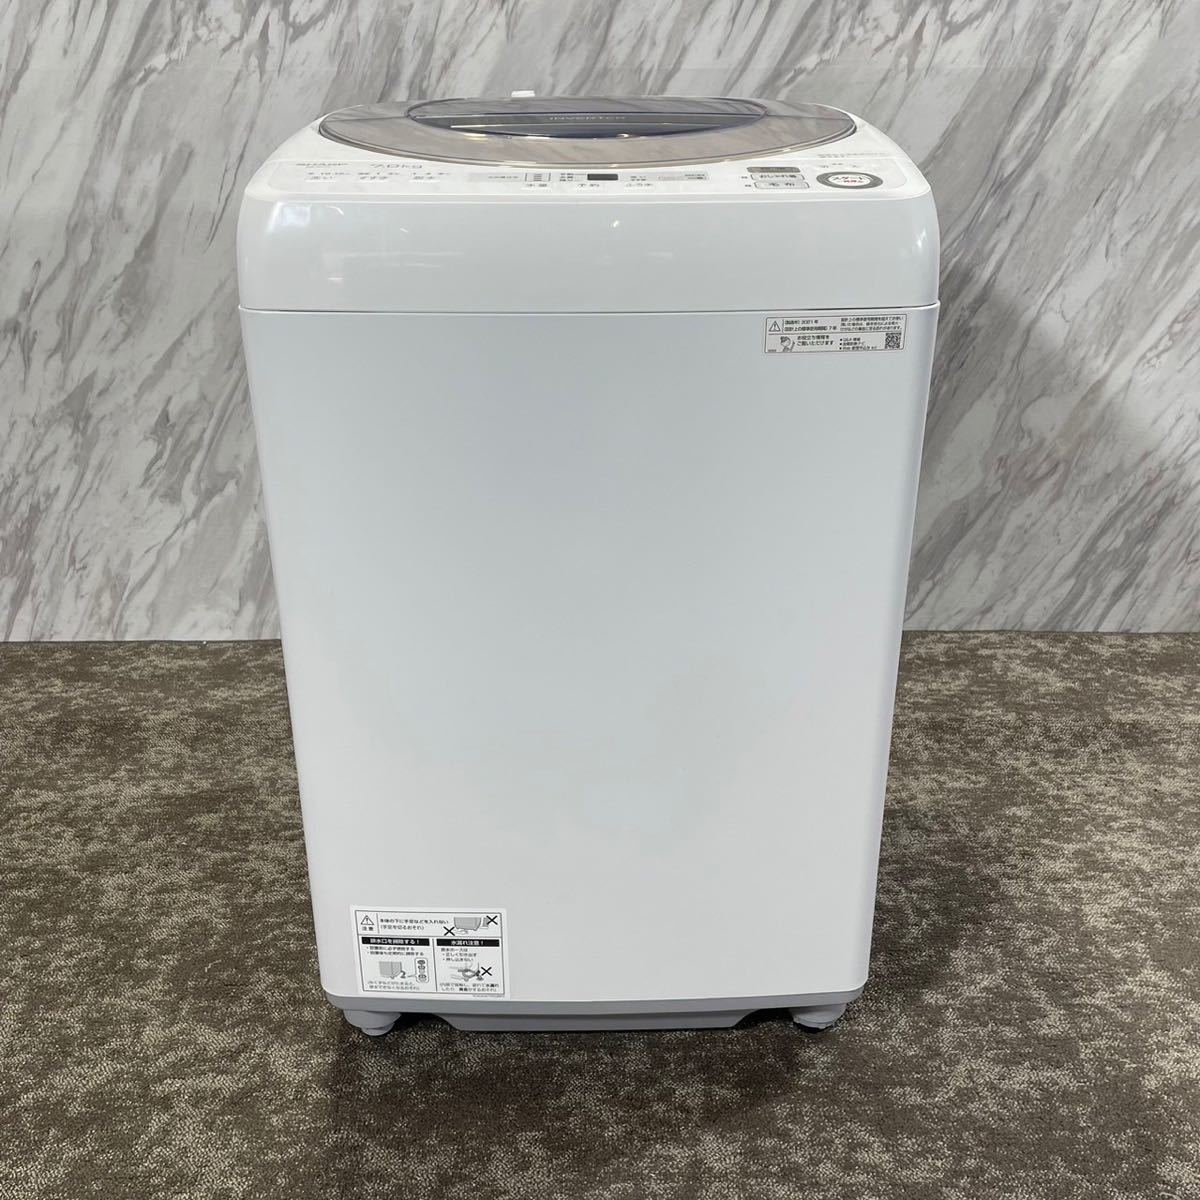 SHARP 洗濯機 ES-SH7C-N 7kg-